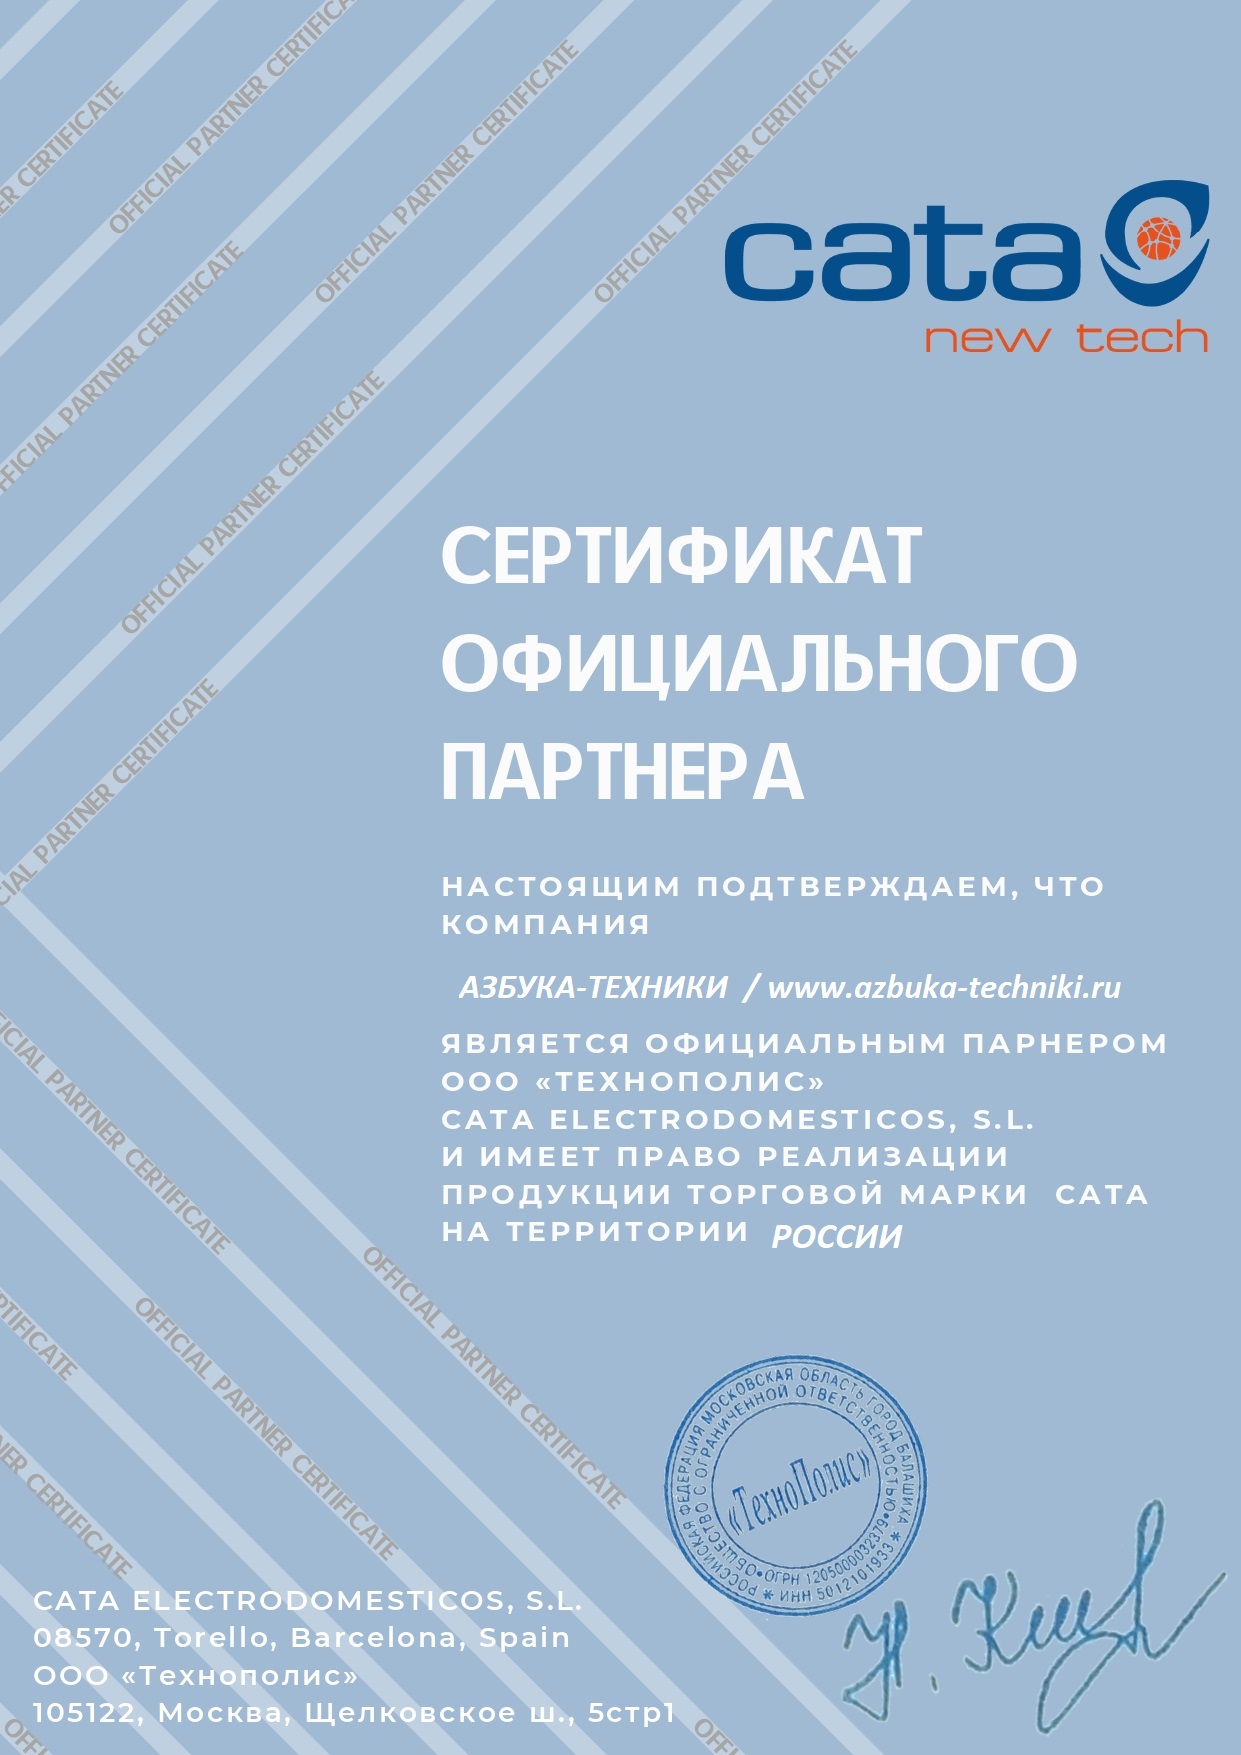 Сертификат официального партнера Cata